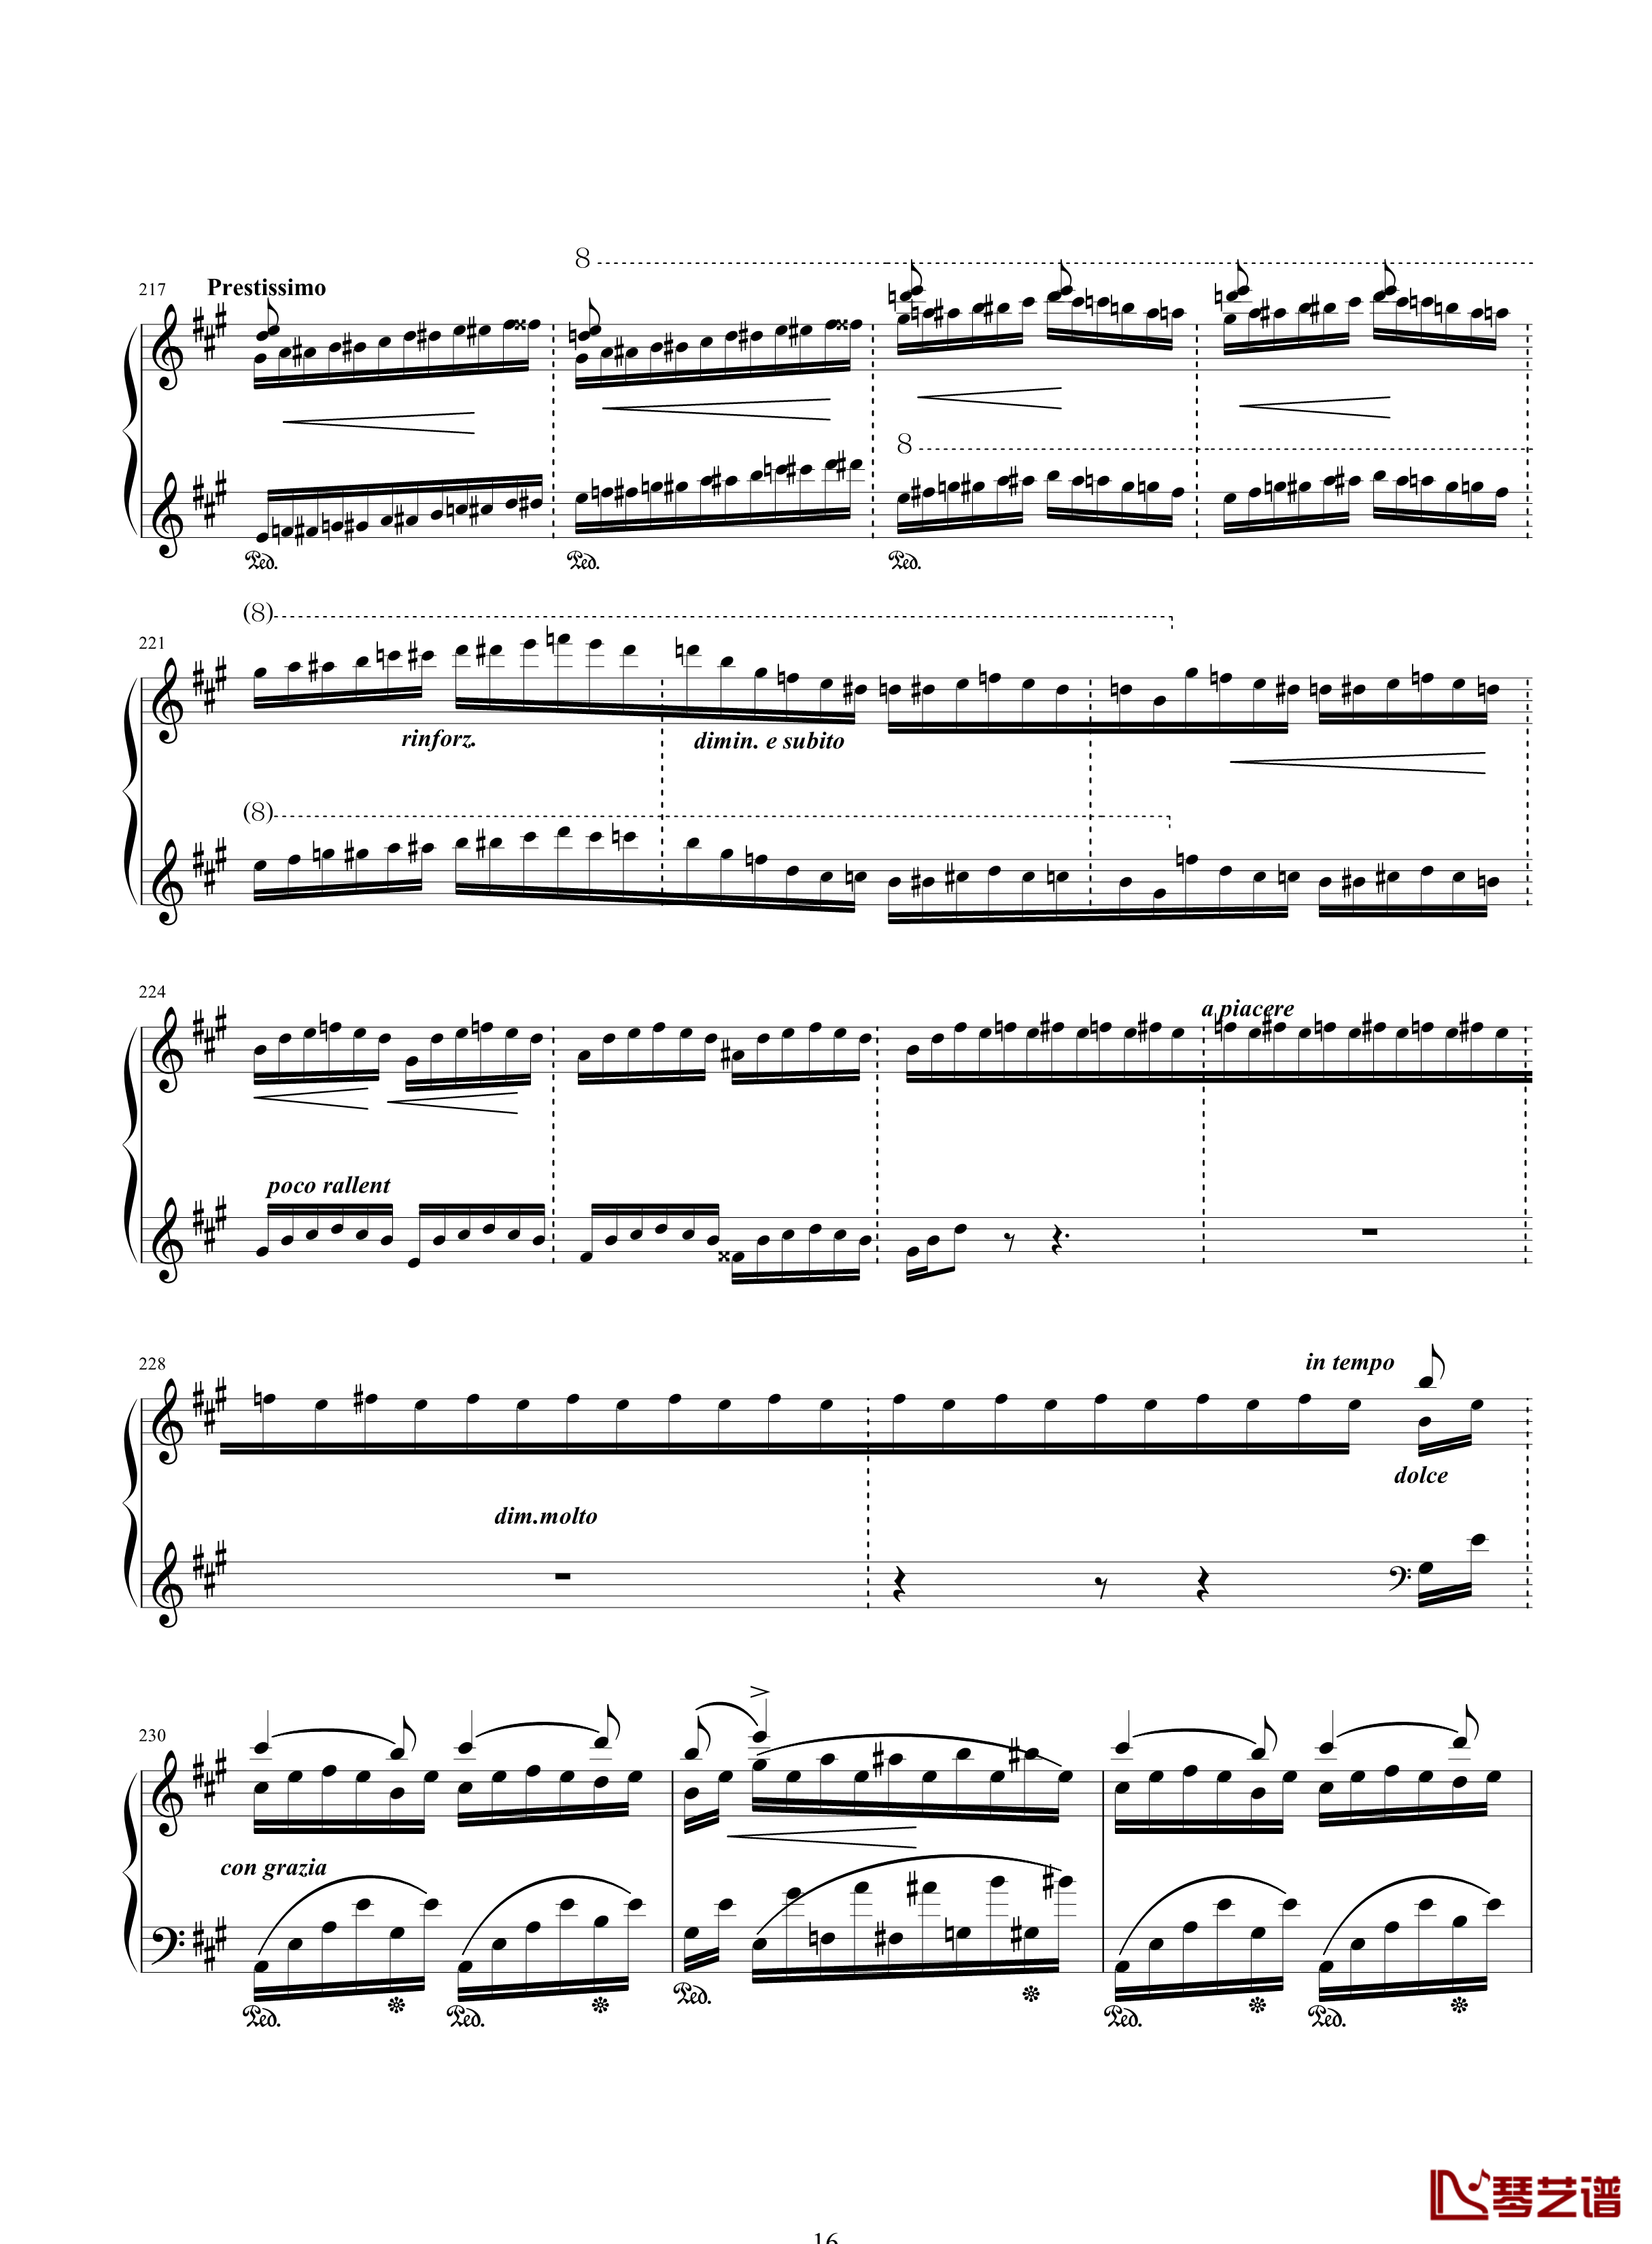 唐璜的回忆钢琴谱-34页全谱-李斯特16